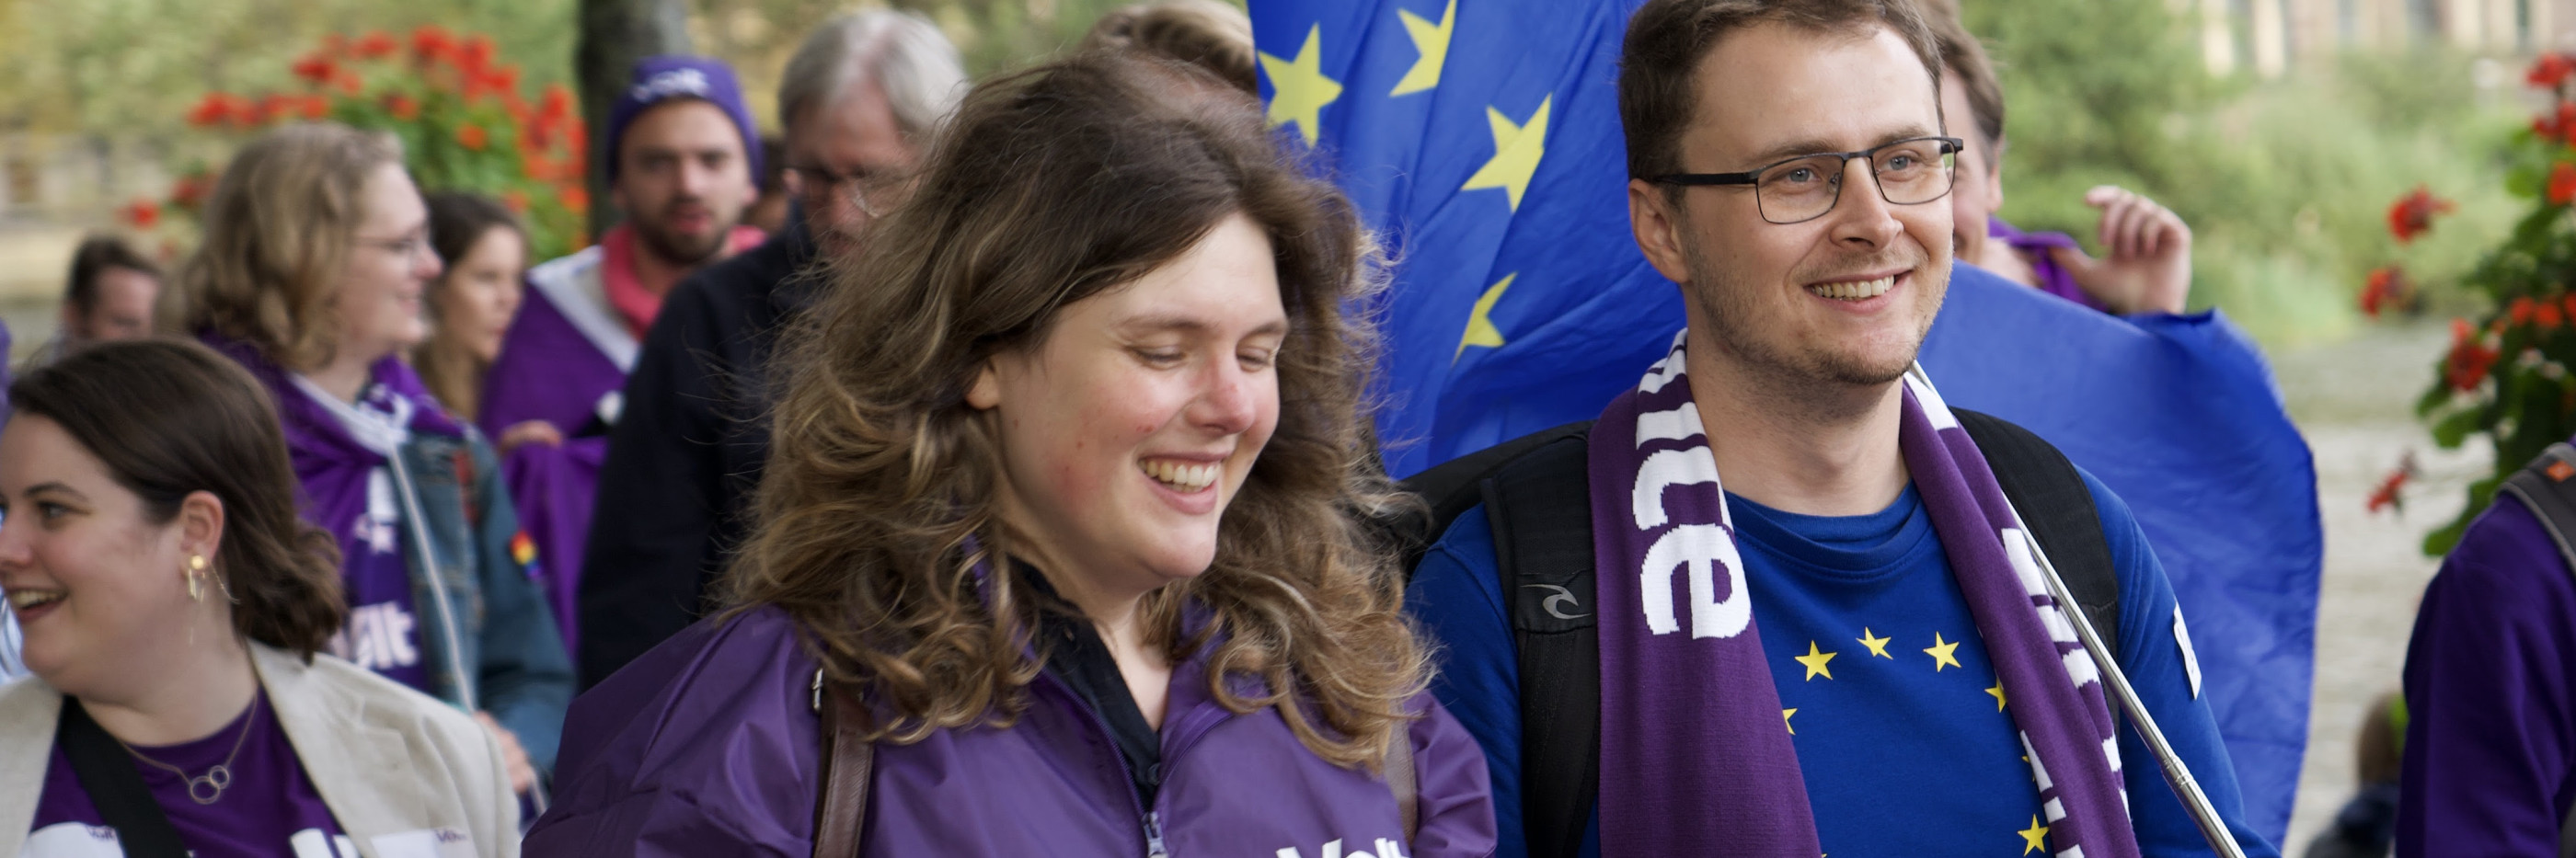 Marieke Koekkoek loopt in de klimaat mars mee. Op de achtergrond zijn mensen paars gekleed met Europa vlaggen.